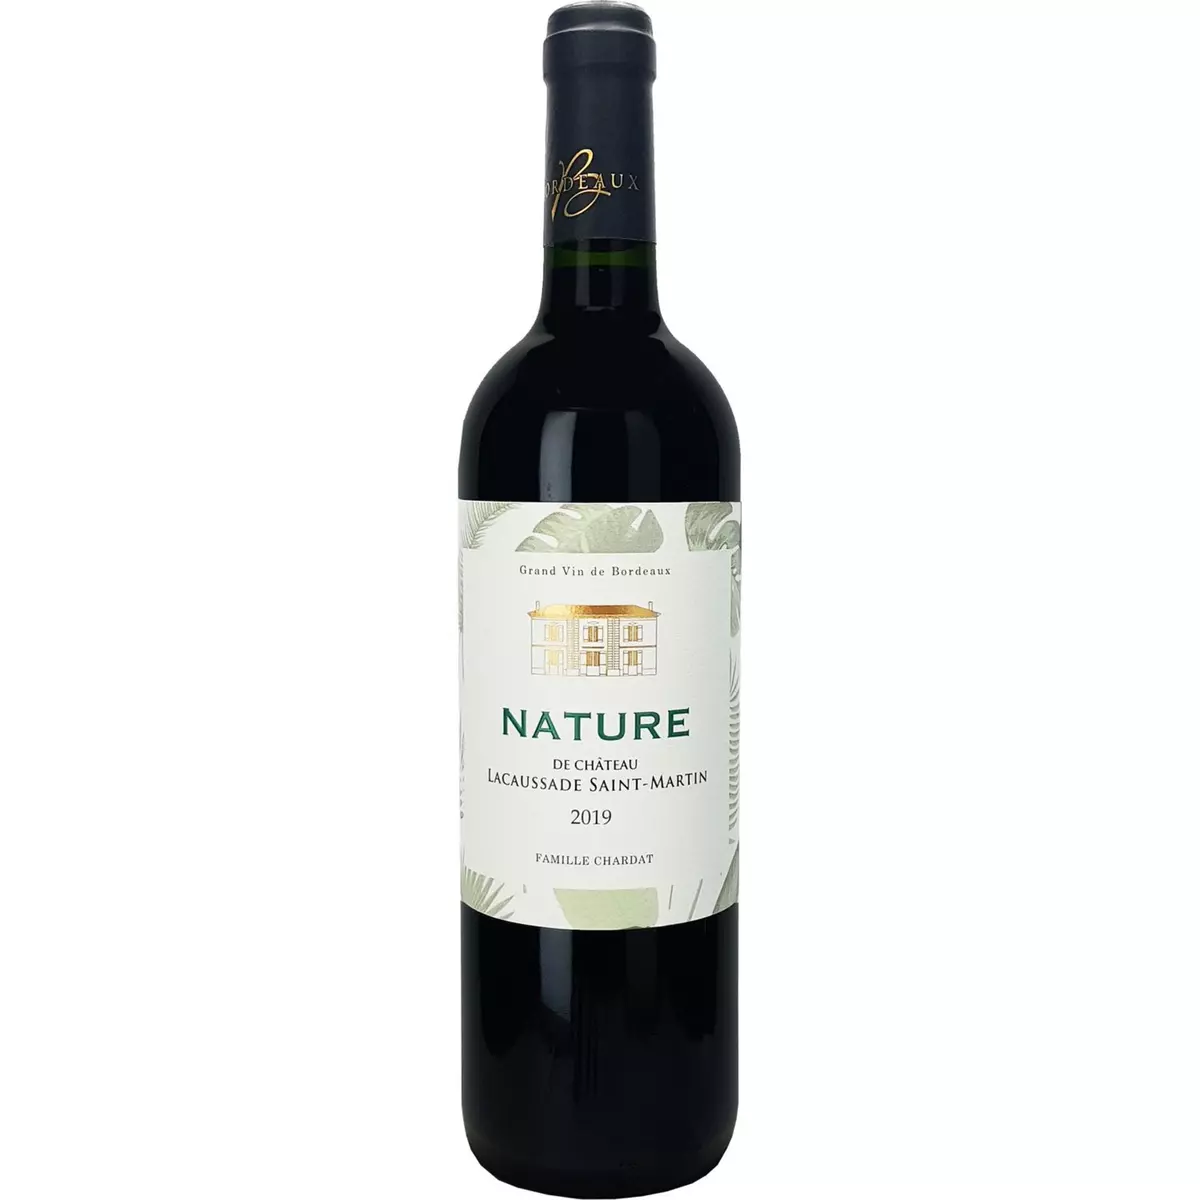 Vin rouge AOP Blaye-Côtes-de-Bordeaux Château La Caussade St-Martin 2019 75cl